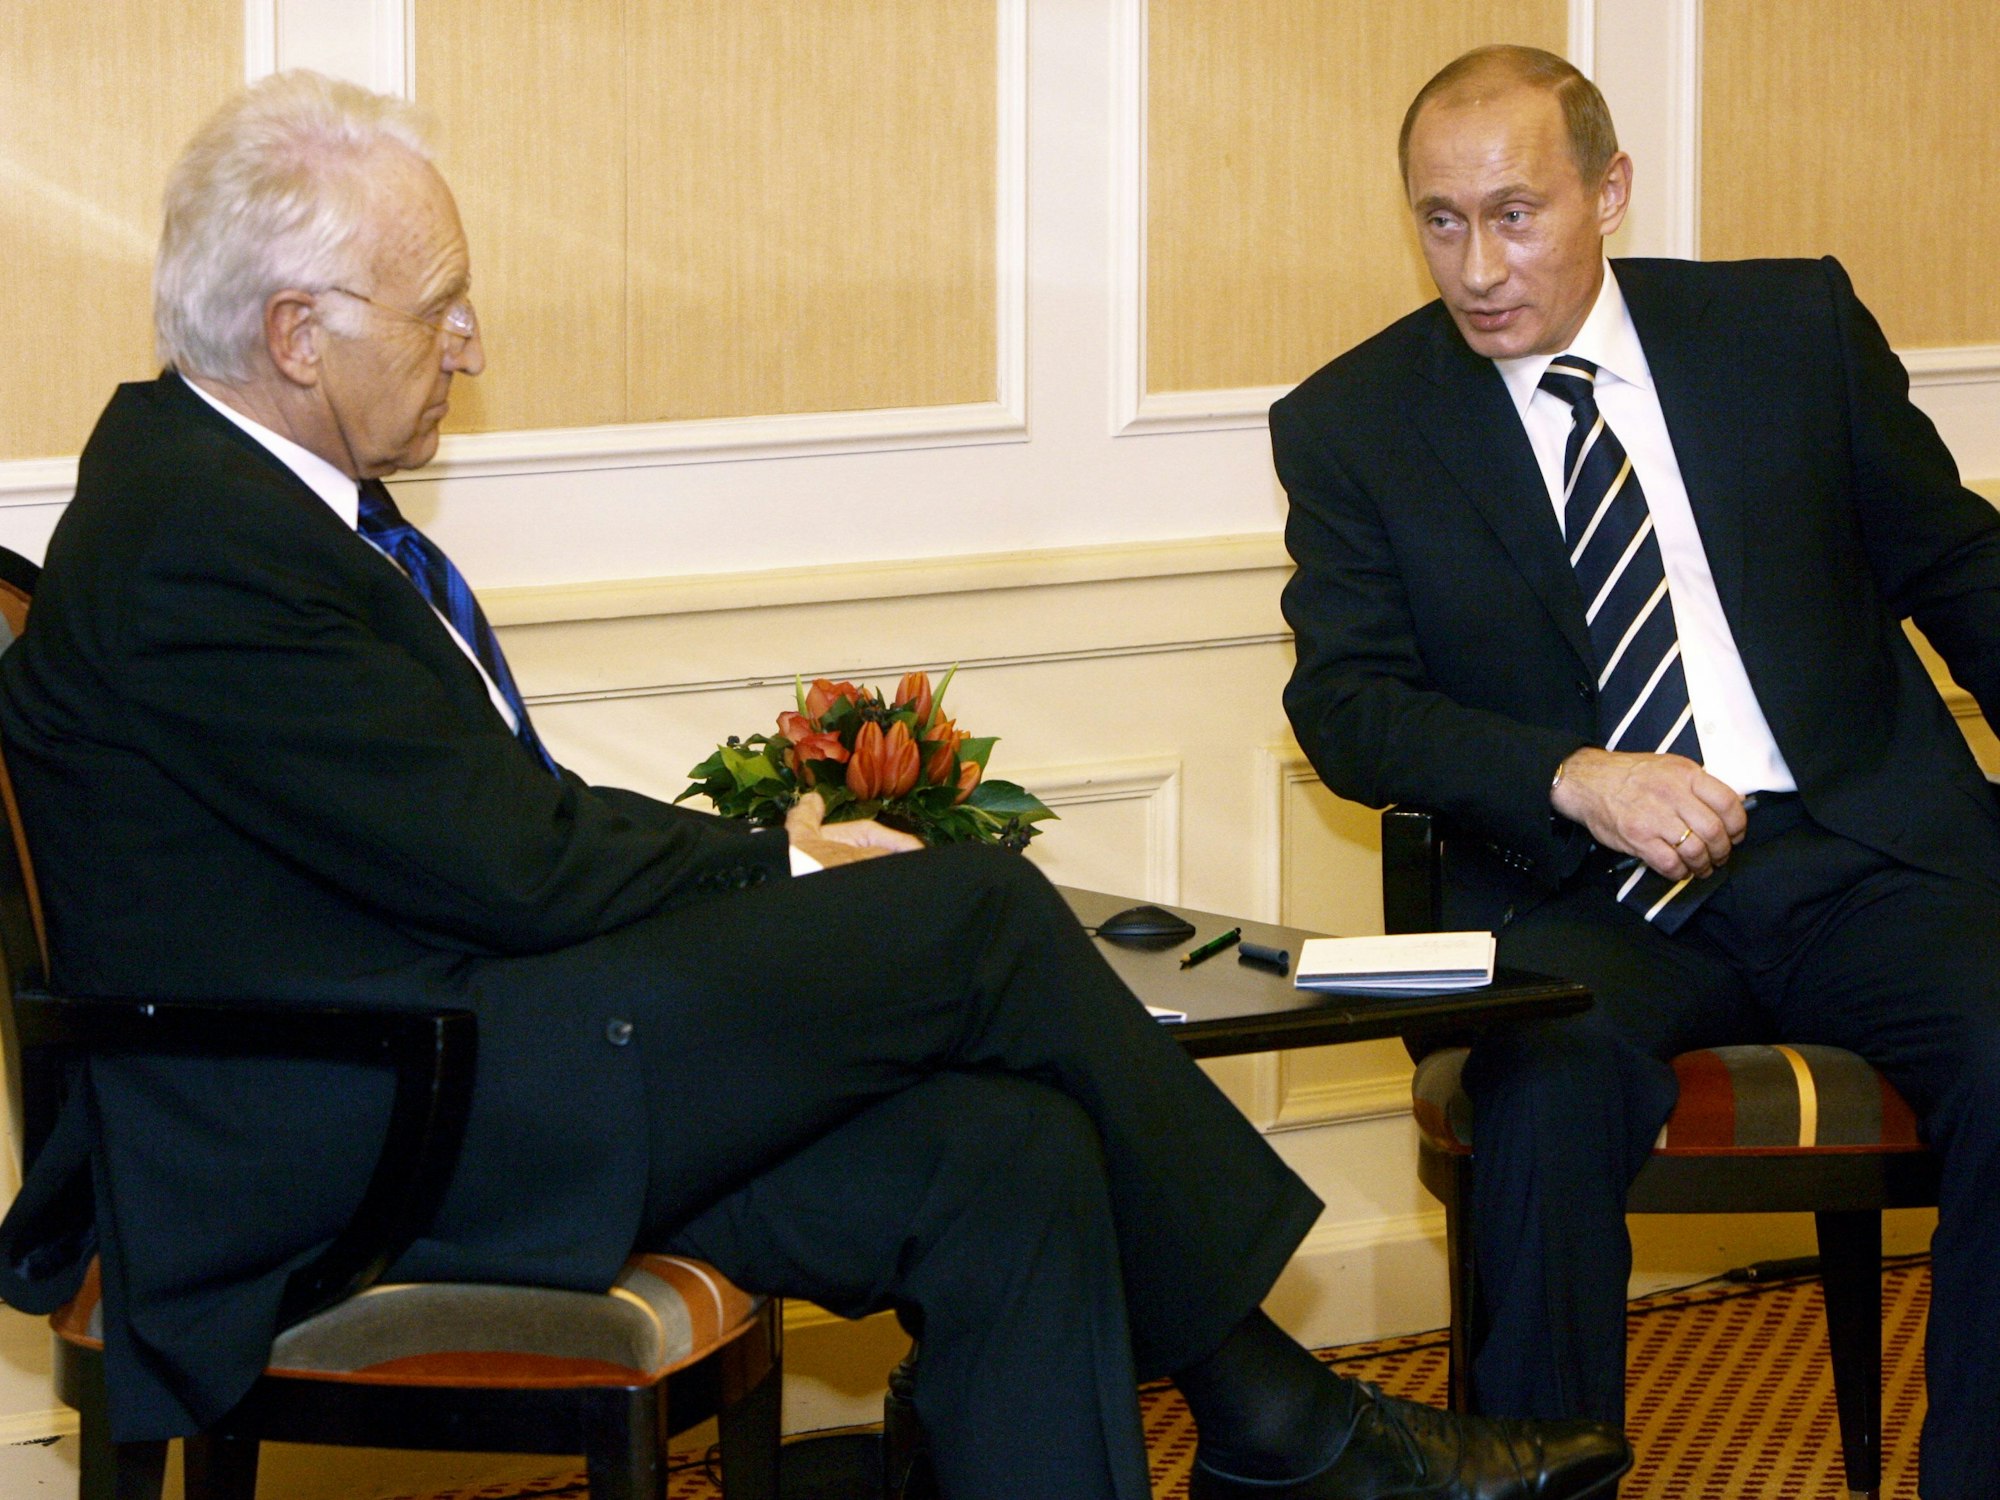 Während der 43. Münchner Sicherheitskonferenz in München unterhalten sich der russische Staatspräsident Wladimir Putin (r) und der bayerische Ministerpräsident Edmund Stoiber.